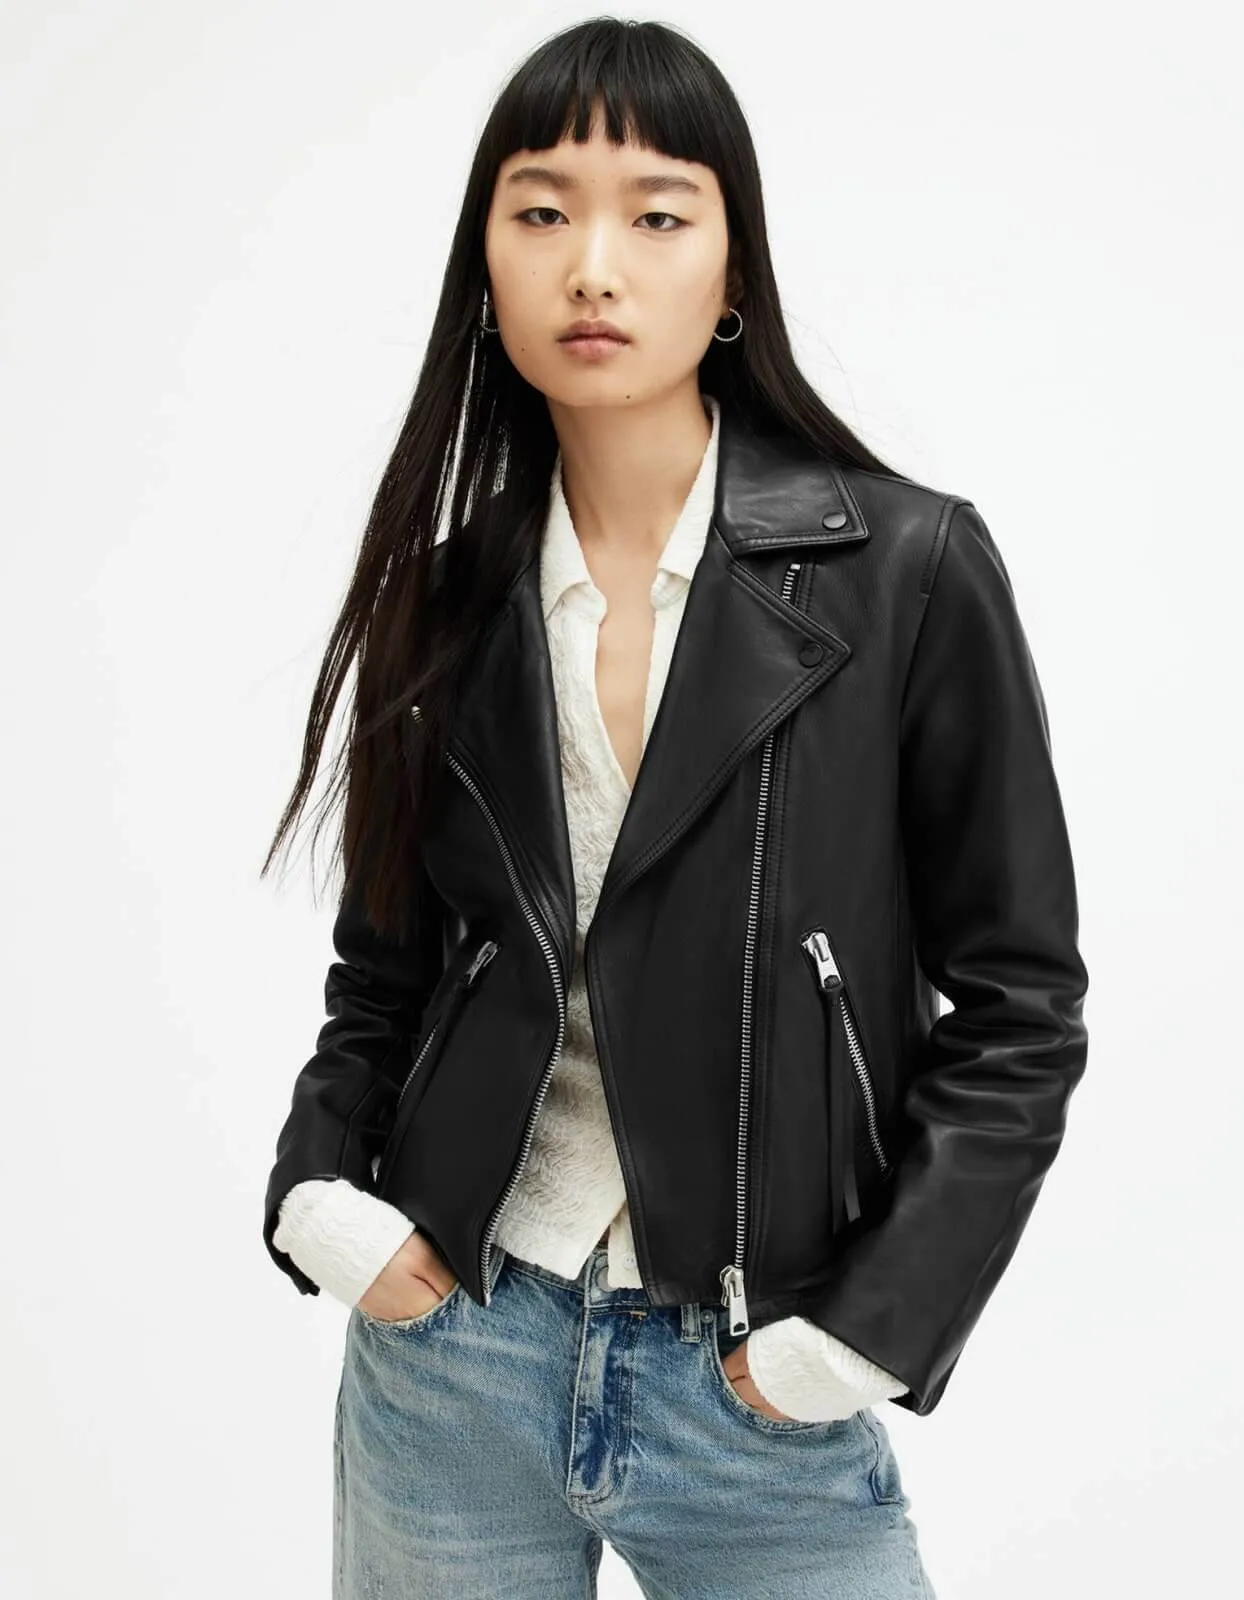 a women wearing leather jacket.